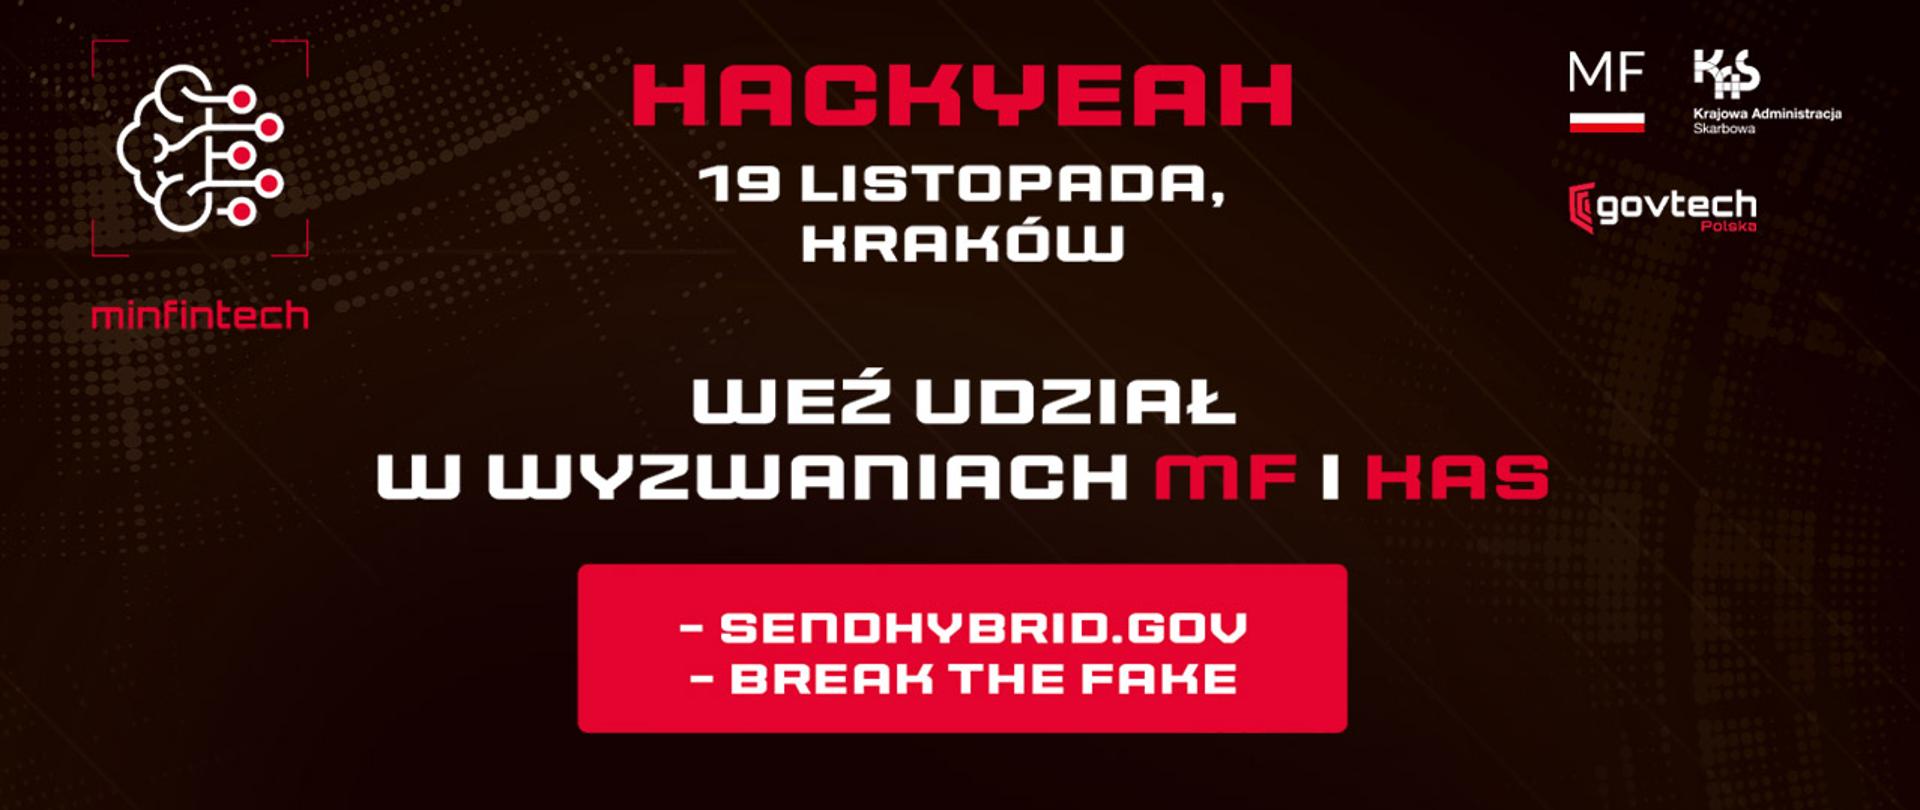 Hackyeah Kraków weź udział w wyzwaniach MF i KAS